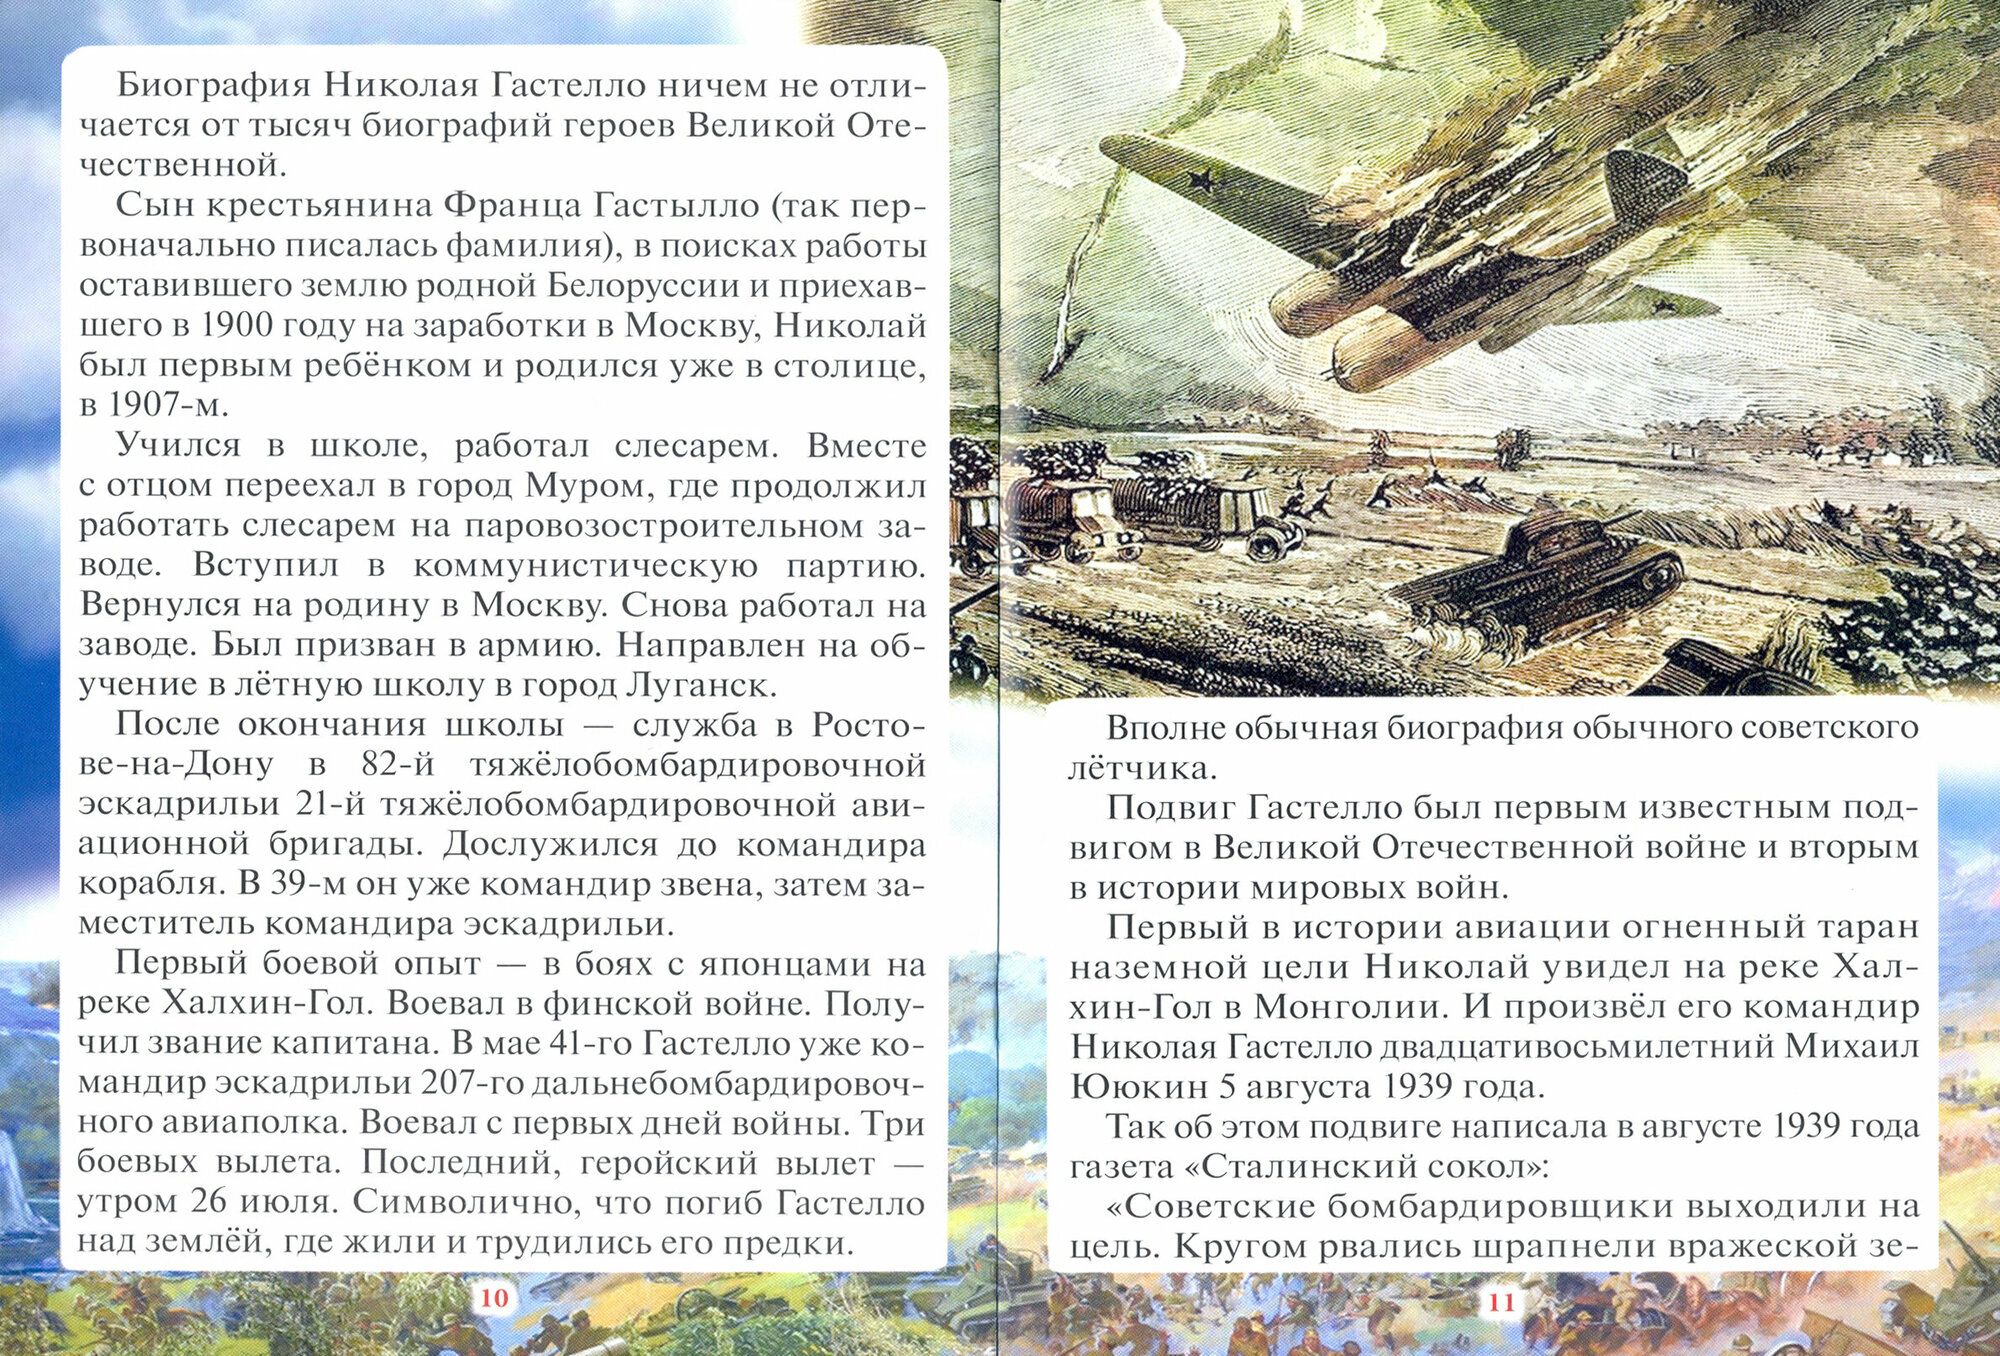 Подвиг Николая Гастелло - Первый огненный таран Великой Отечественной войны - фото №5